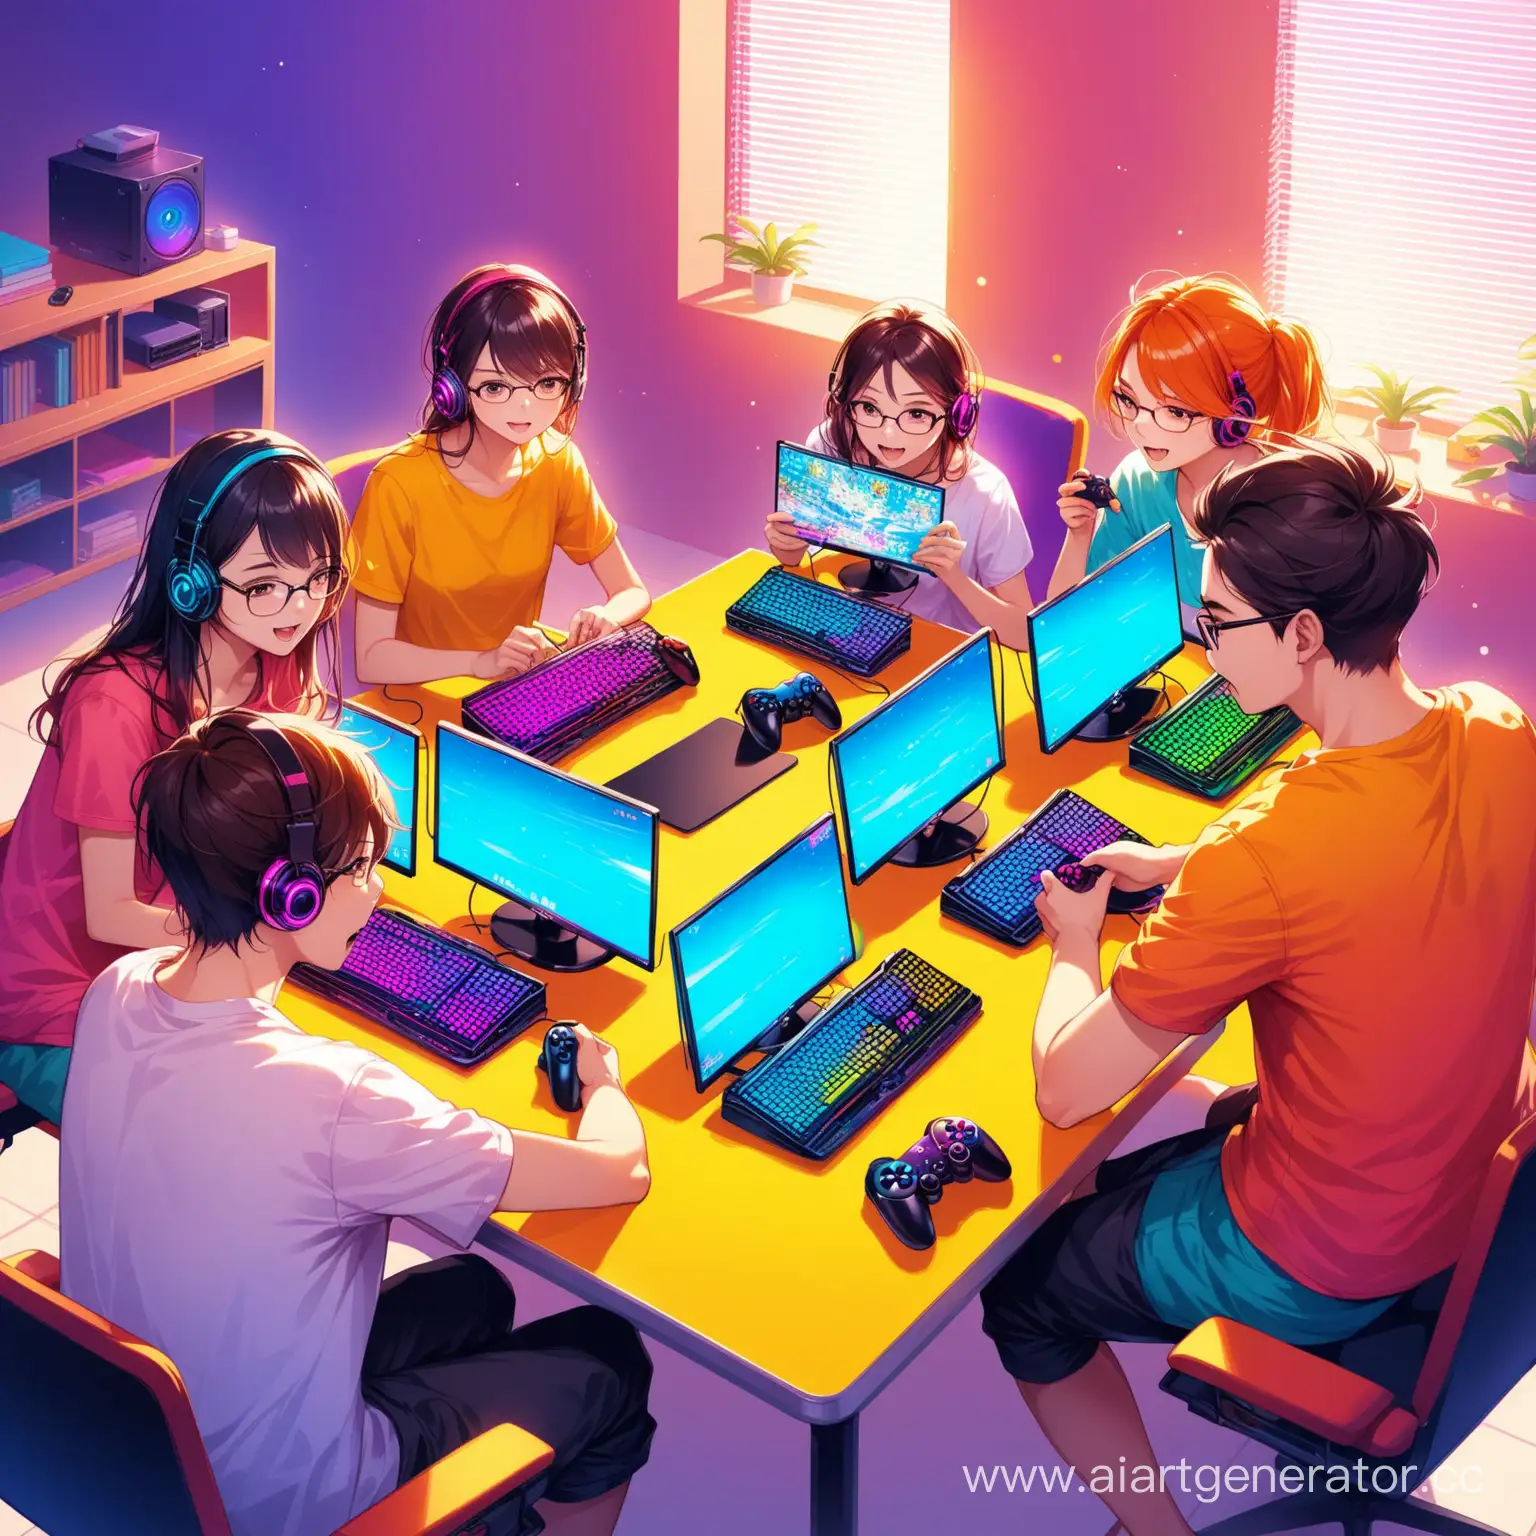 пять человек, играют в игры, компьютеры, яркие цвета